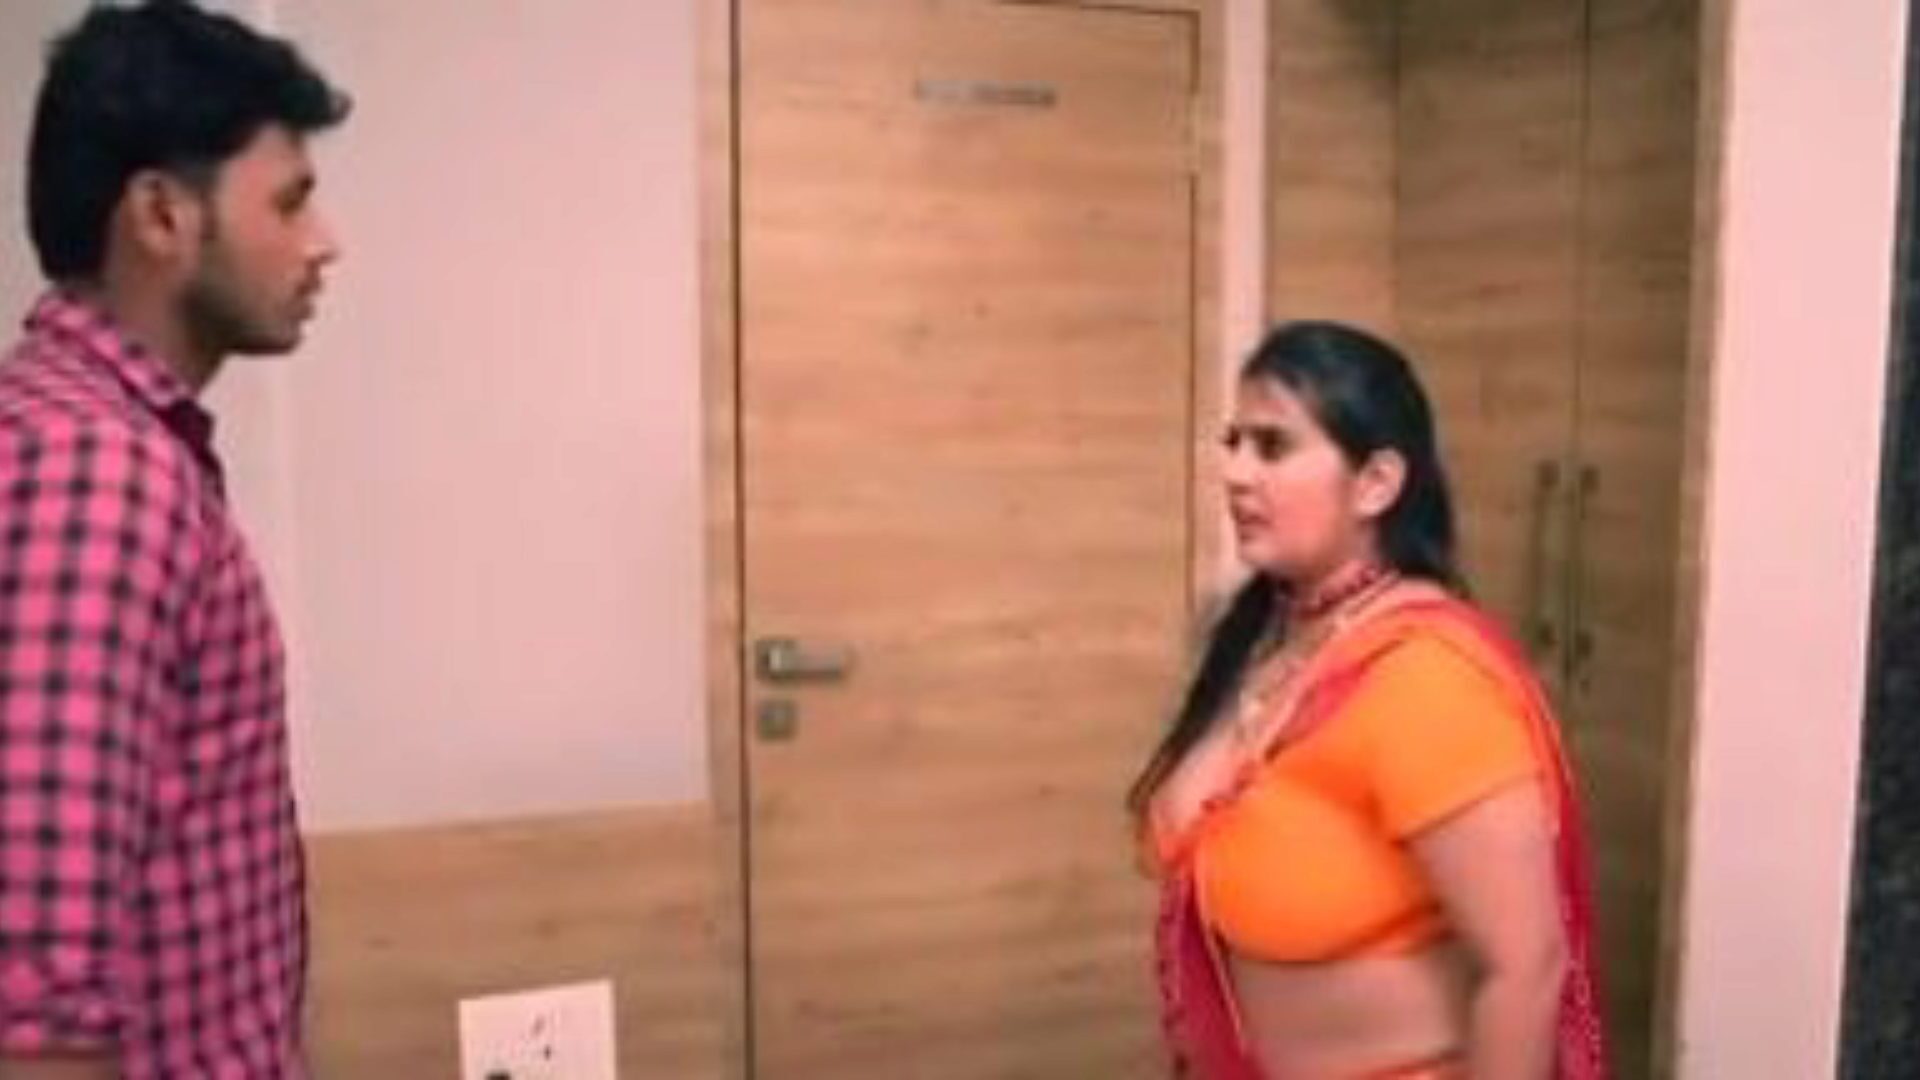 kanchan täti ep5: ilmainen täti xxx porno video 03 - xhamster katsella kanchan täti ep5 putki rakastelu elokuva kohtaus ilmaiseksi kaikille for xhamster, ylivoimainen valikoima bangladeshi täti xxx & täti mobile porno elokuva vinjettejä